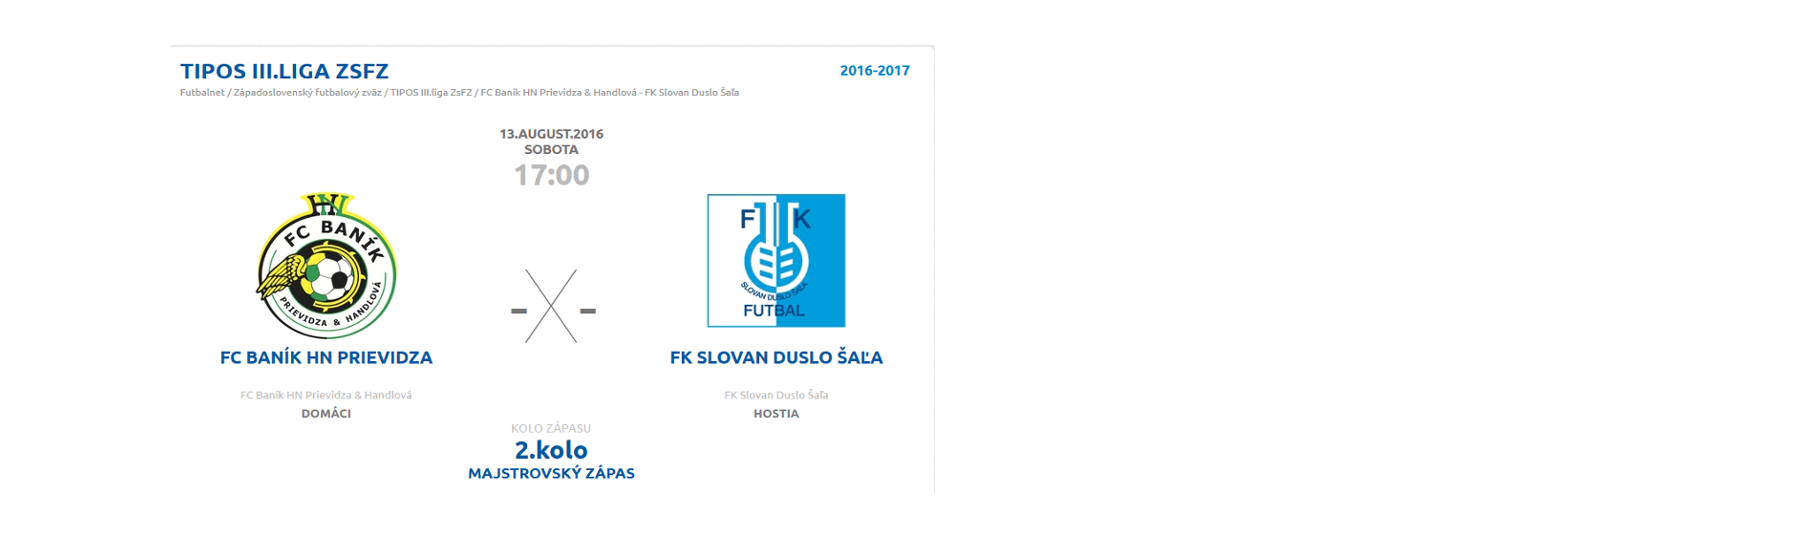 obr: Prvý domáci zápas proti FK Slovan Duslo Šaľa